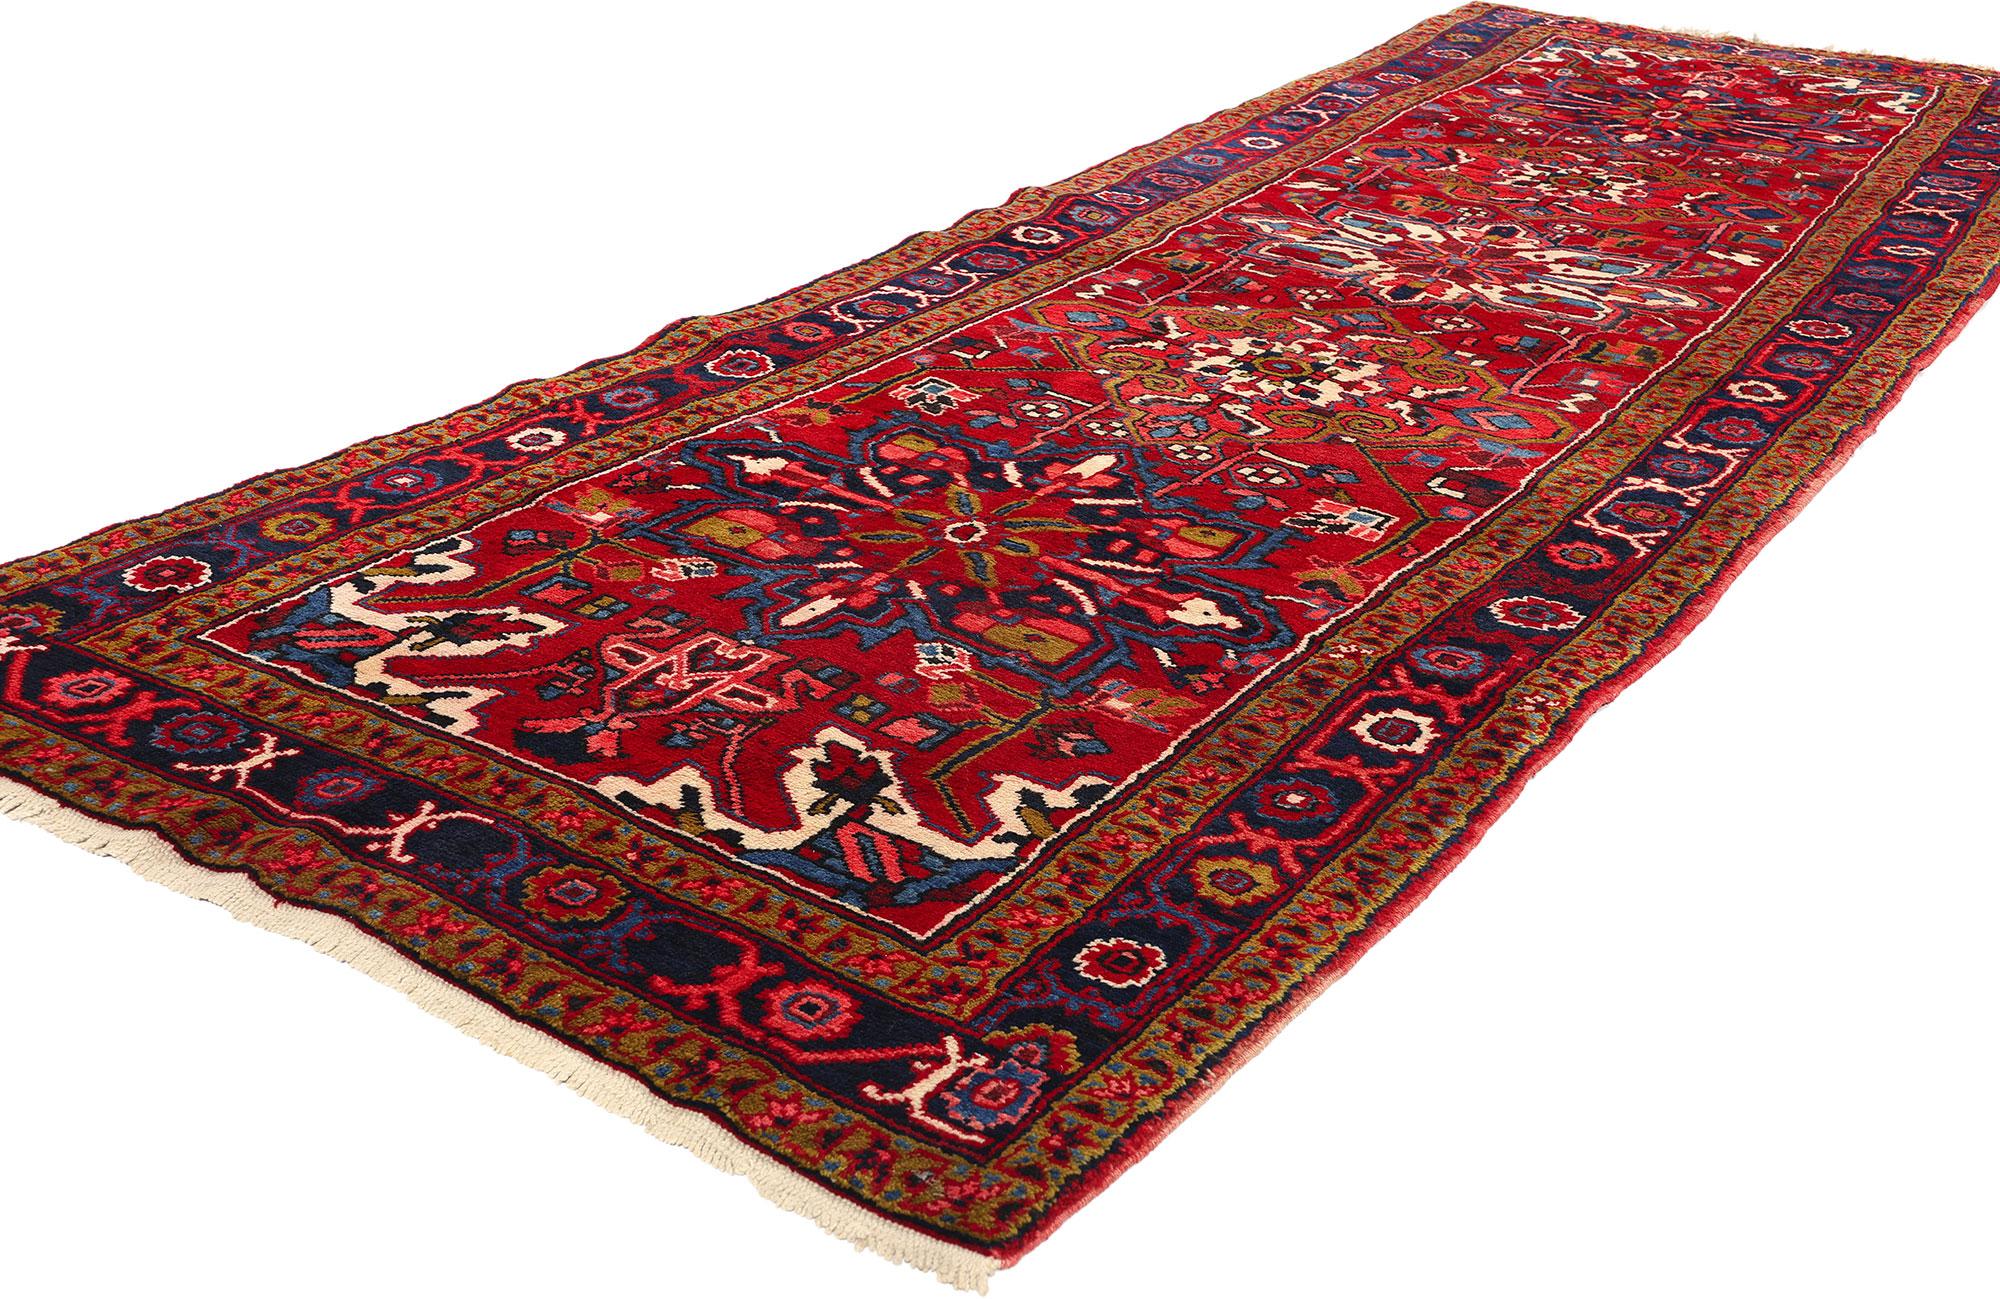 60247 Tapis persan vintage Heriz Runner, 03'09 x 11'06. Les chemins de tapis persans Heriz sont un type spécifique de tapis Heriz, de format long et étroit, idéal pour décorer les couloirs, les escaliers et les autres espaces étroits de la maison.